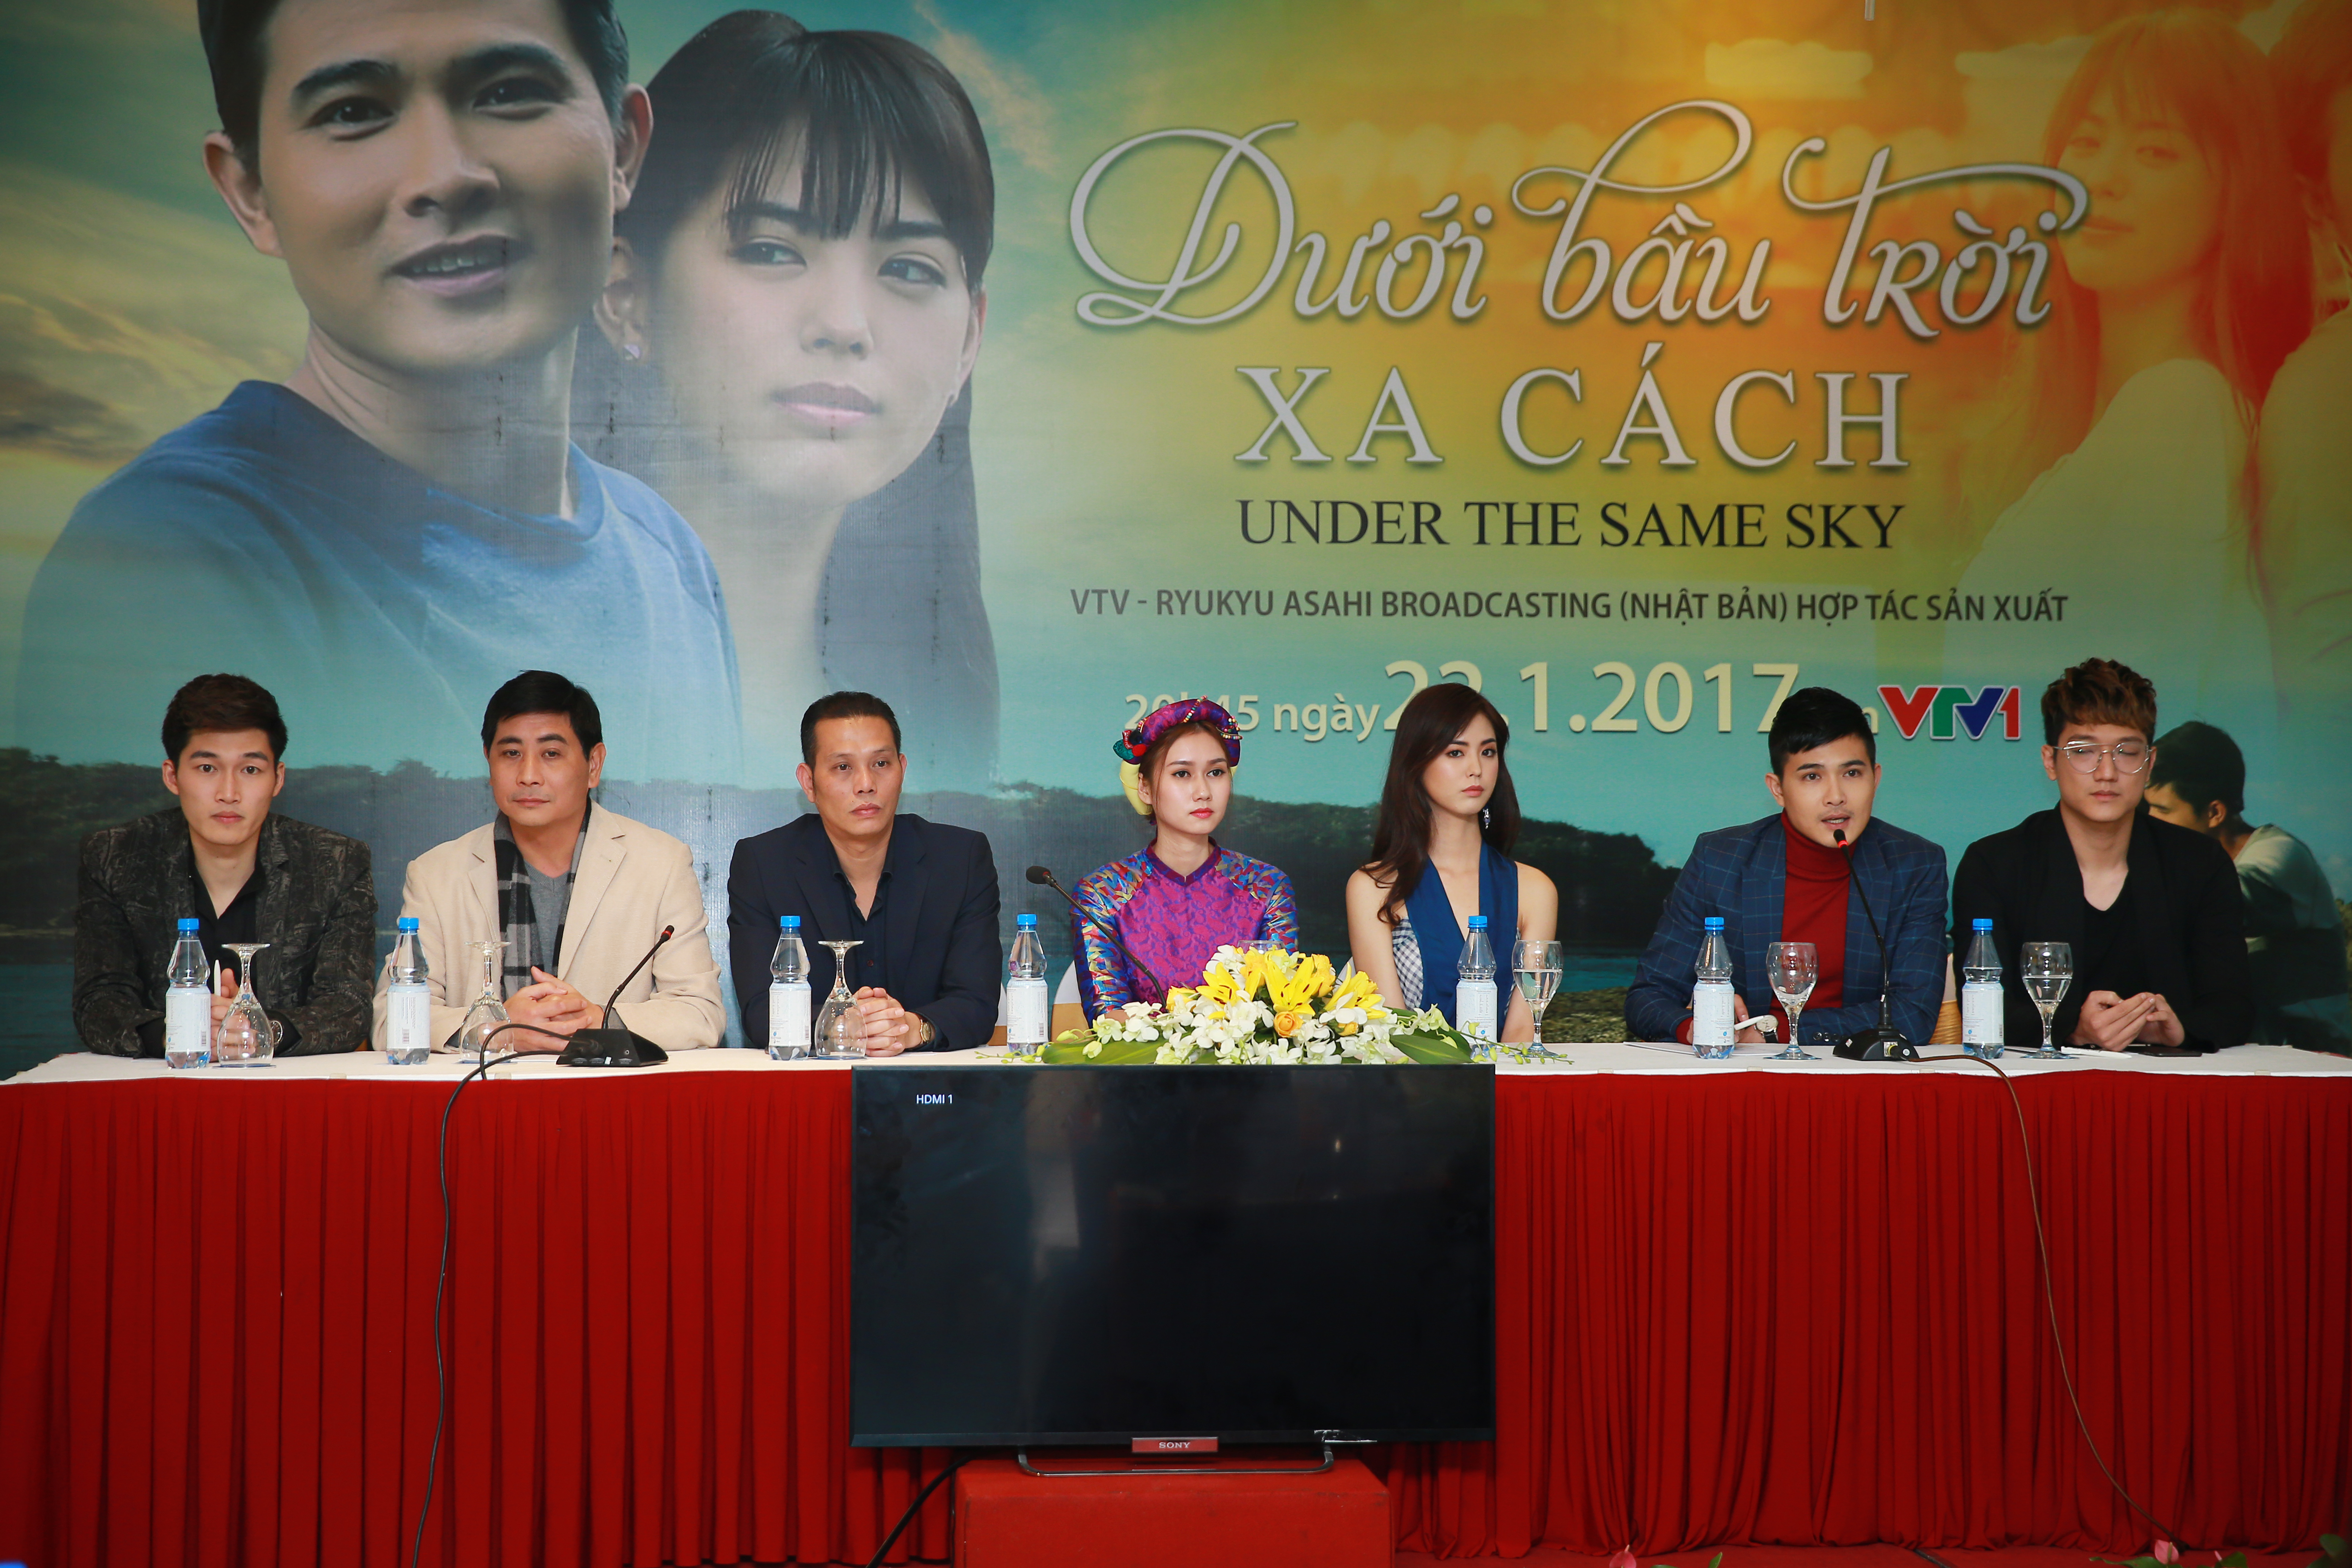 “Dưới bầu trời xa cách” sắp ra mắt khán giả Việt Nam và Nhật Bản